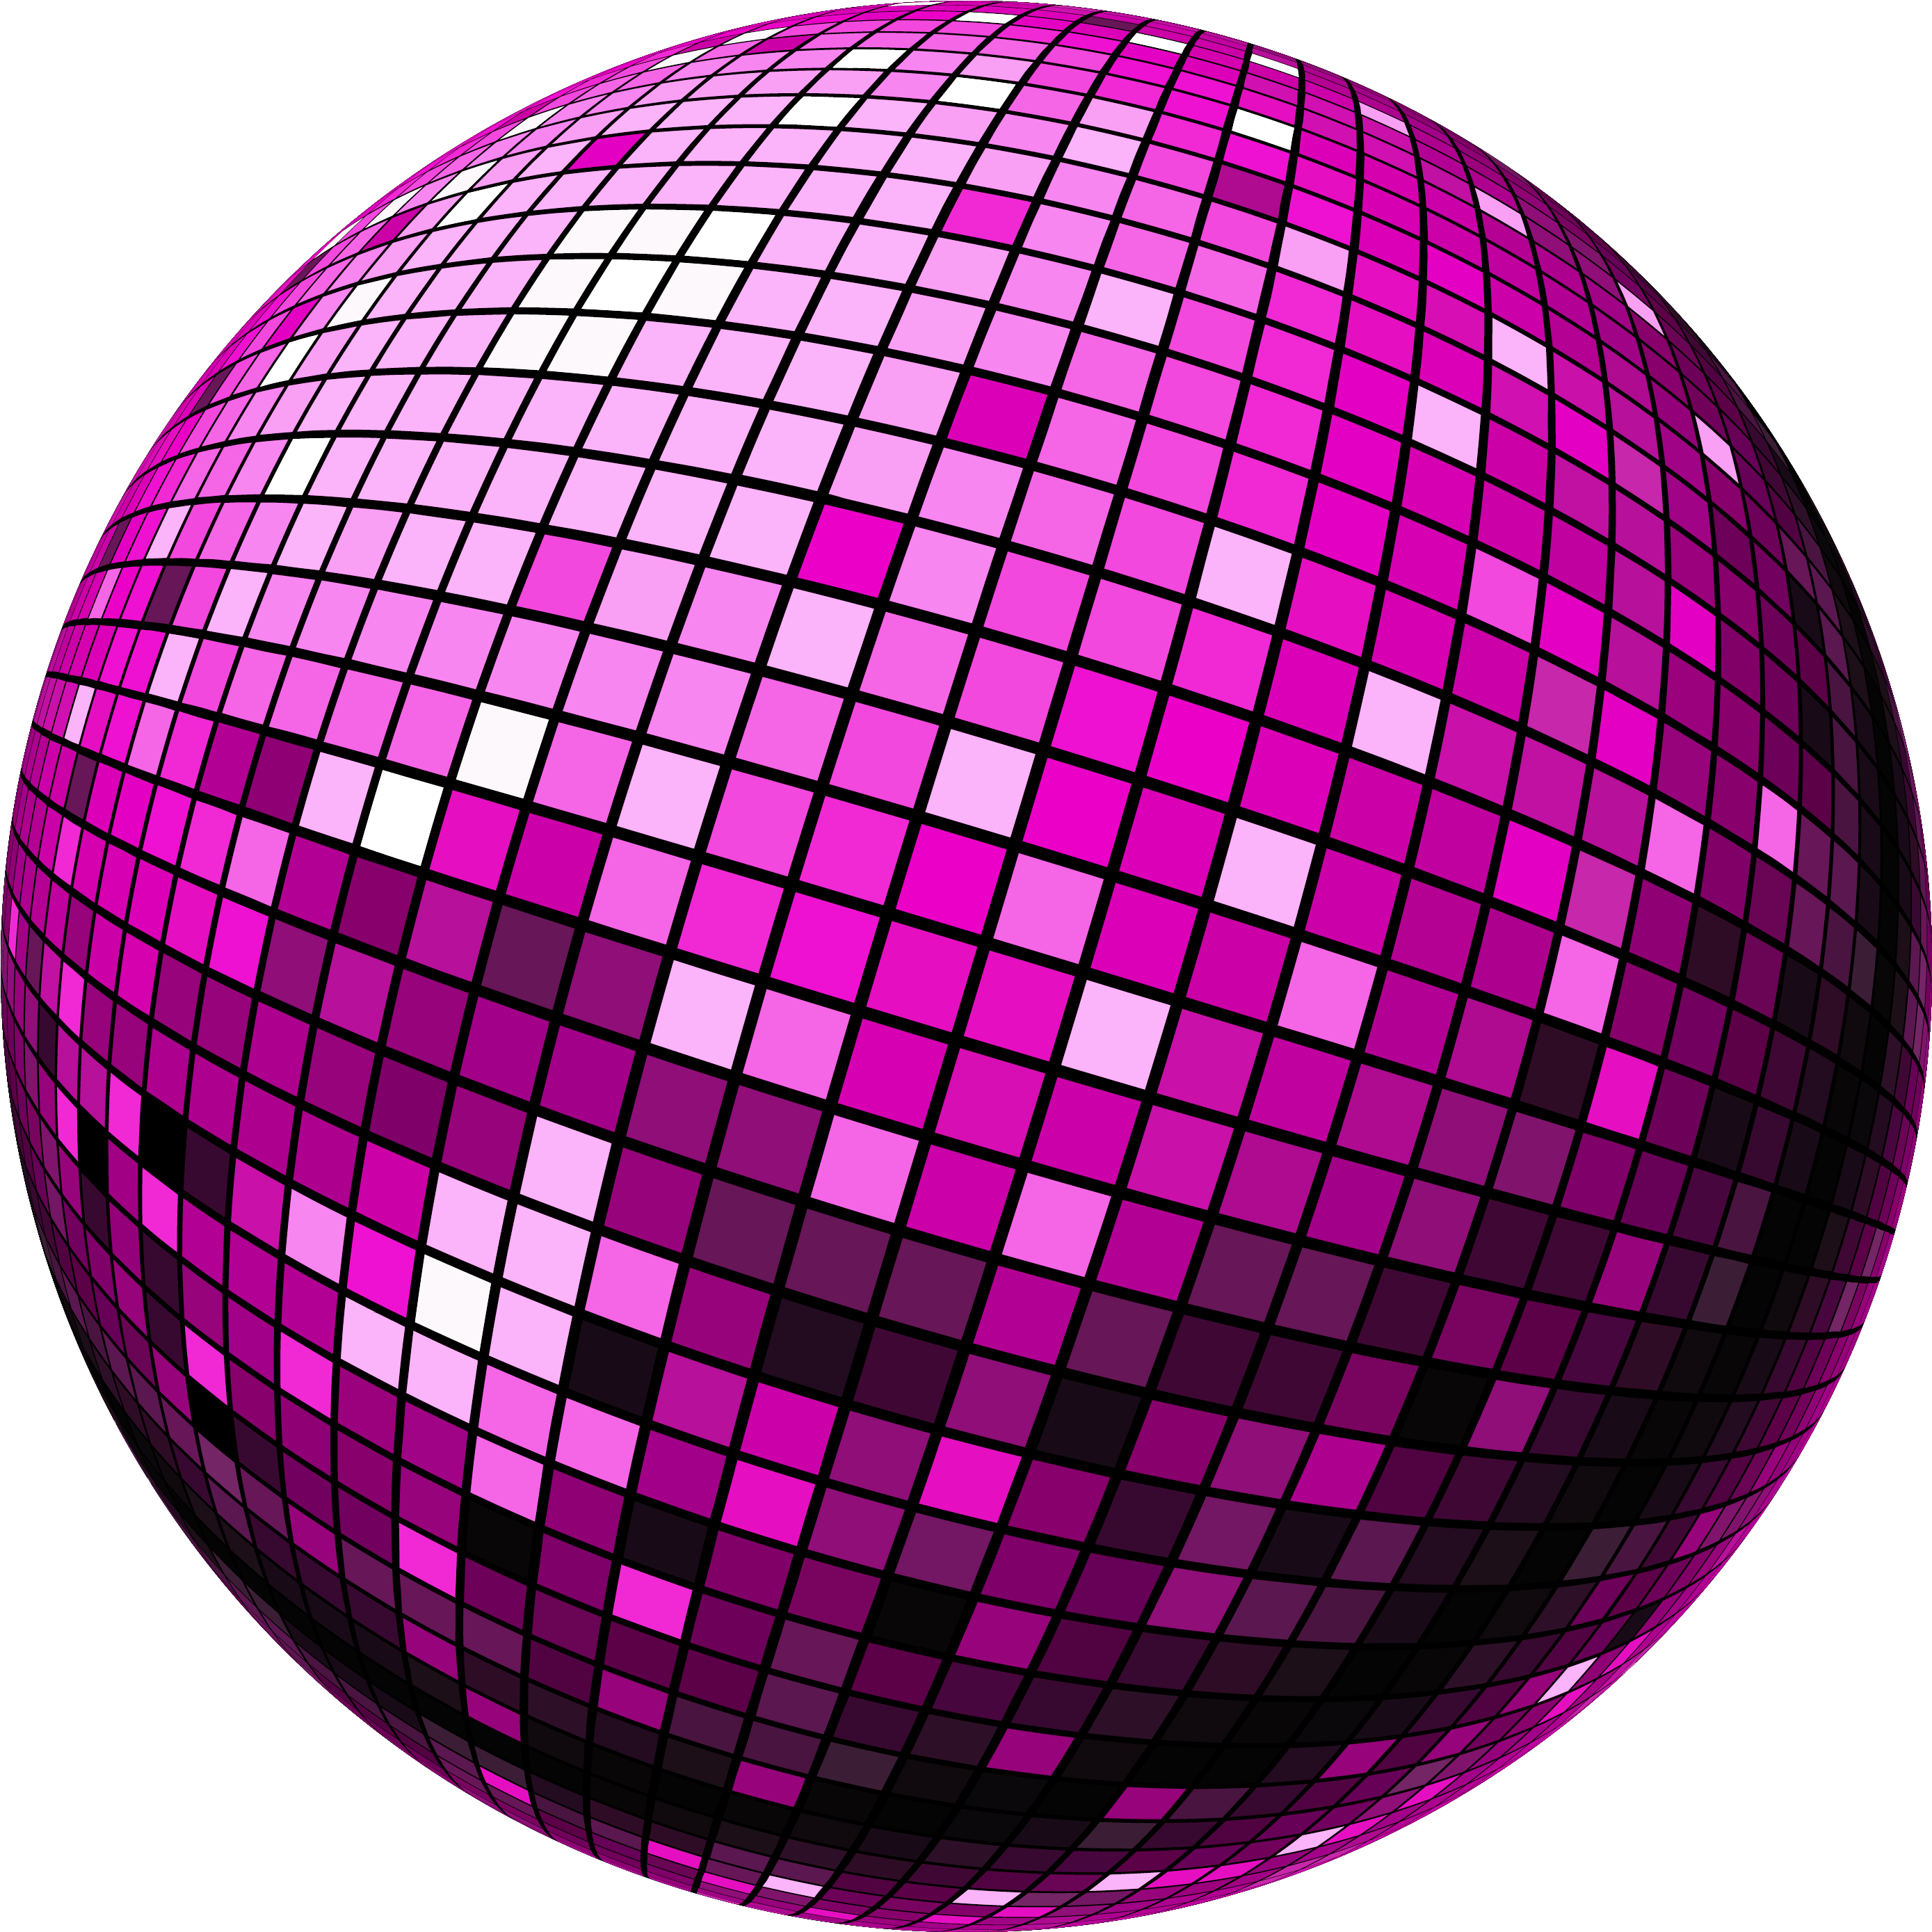 Einladungskarten Geburtstag Discokugel Awesome Modelle - Deutsche Schlager Hits Deluxe 80 Dance Schlager Hits (2918x2930)